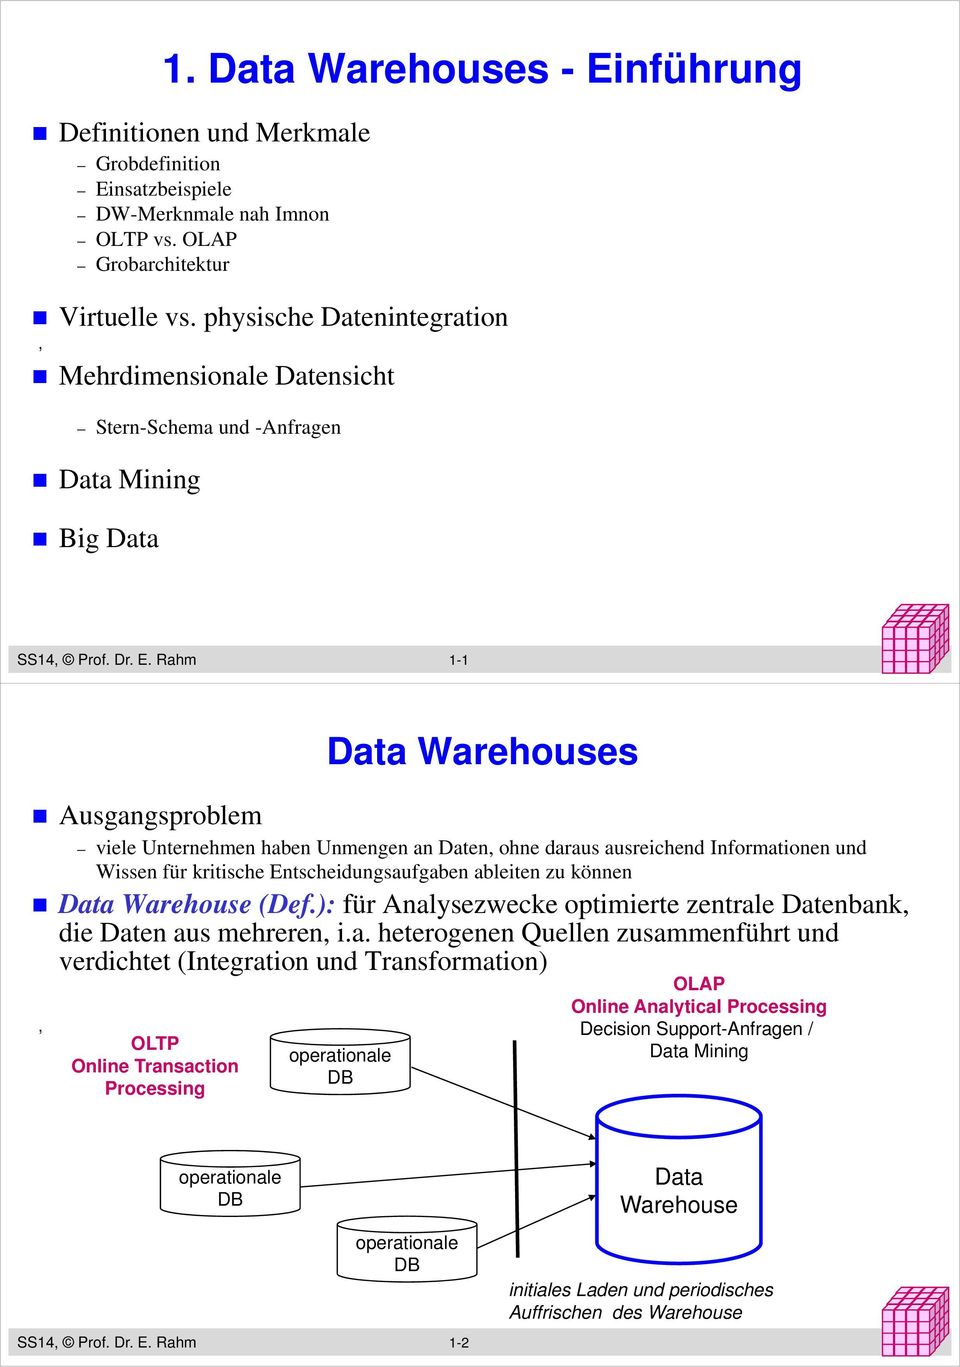 Rahm 1-1 Ausgangsproblem Data Warehouses viele Unternehmen haben Unmengen an Daten ohne daraus ausreichend Informationen und Wissen für kritische Entscheidungsaufgaben ableiten zu können Data